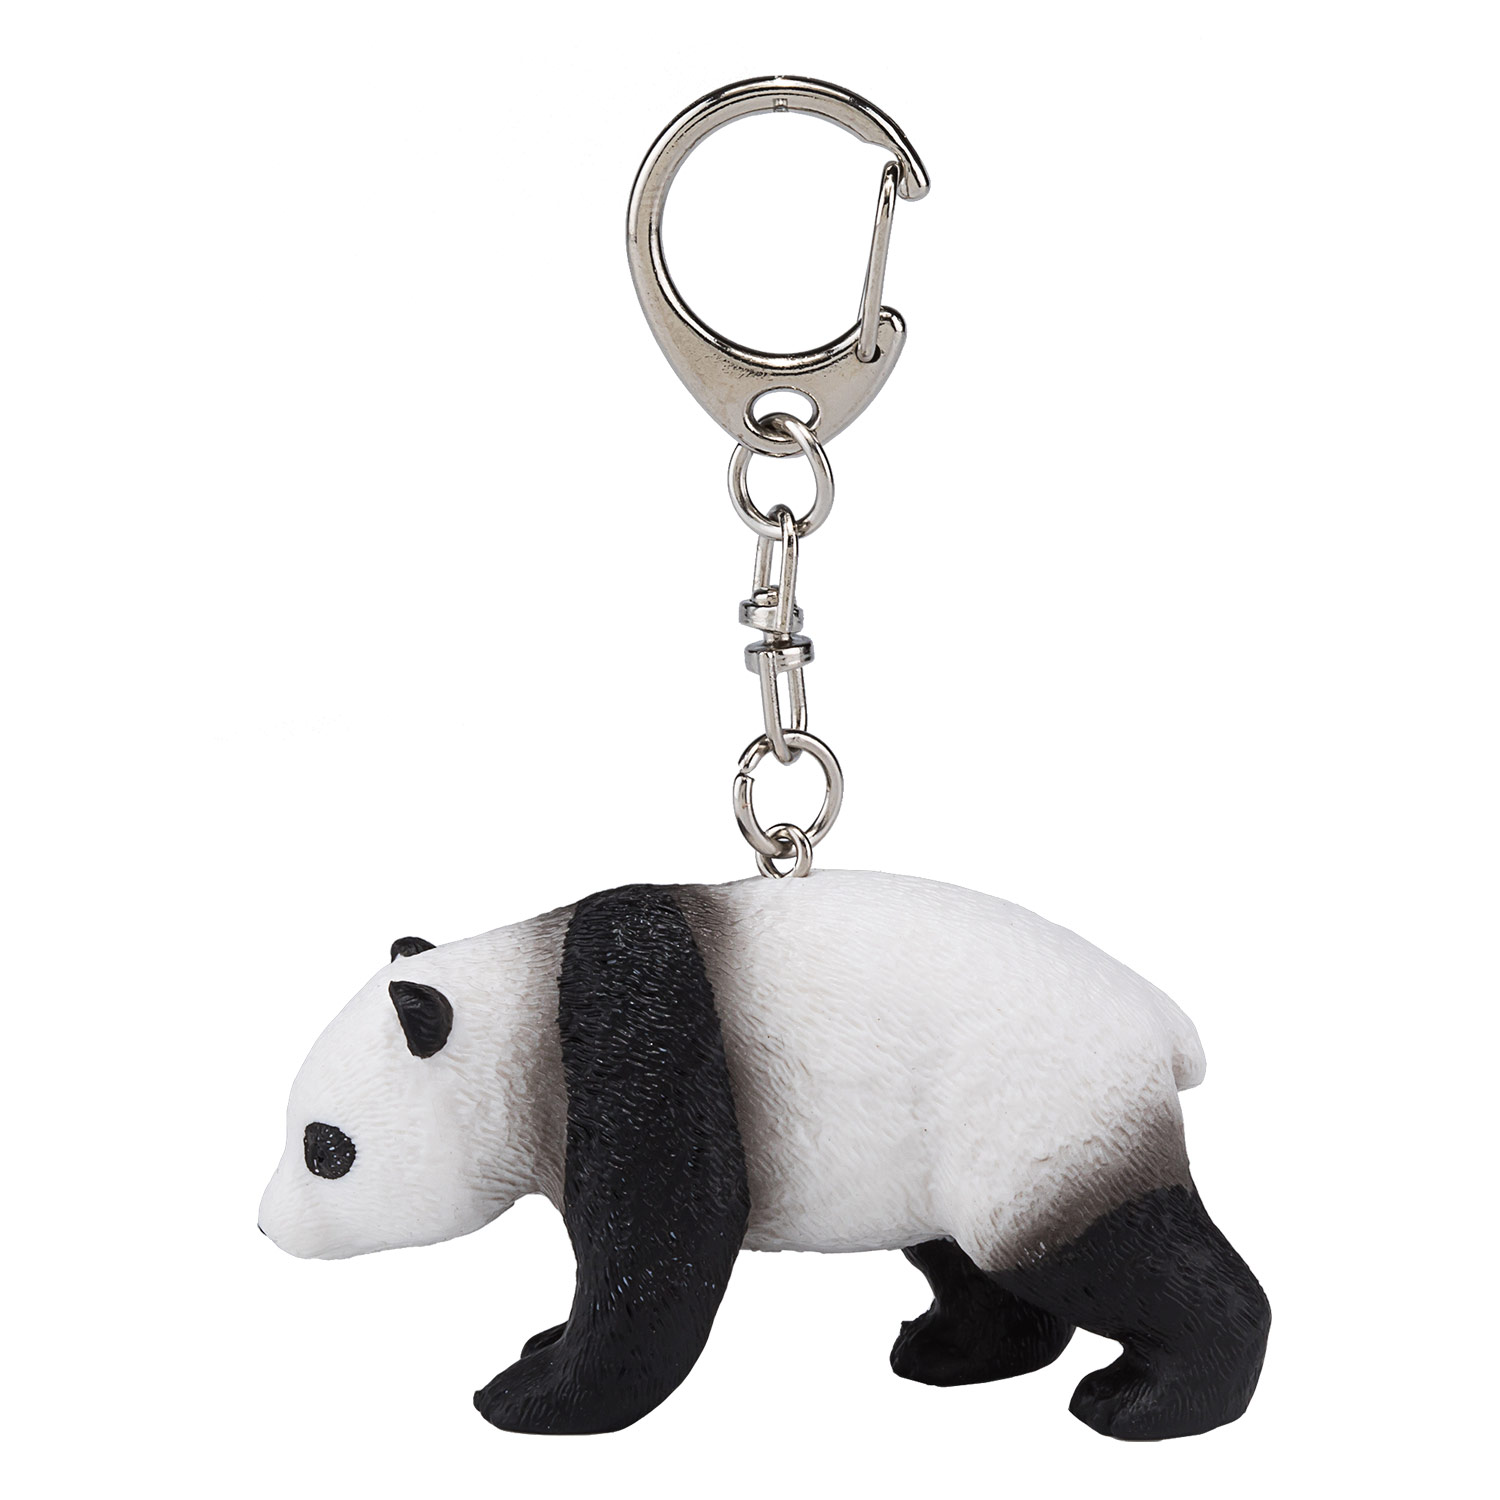 Porte-clés Mojo Bébé Panda - 387454